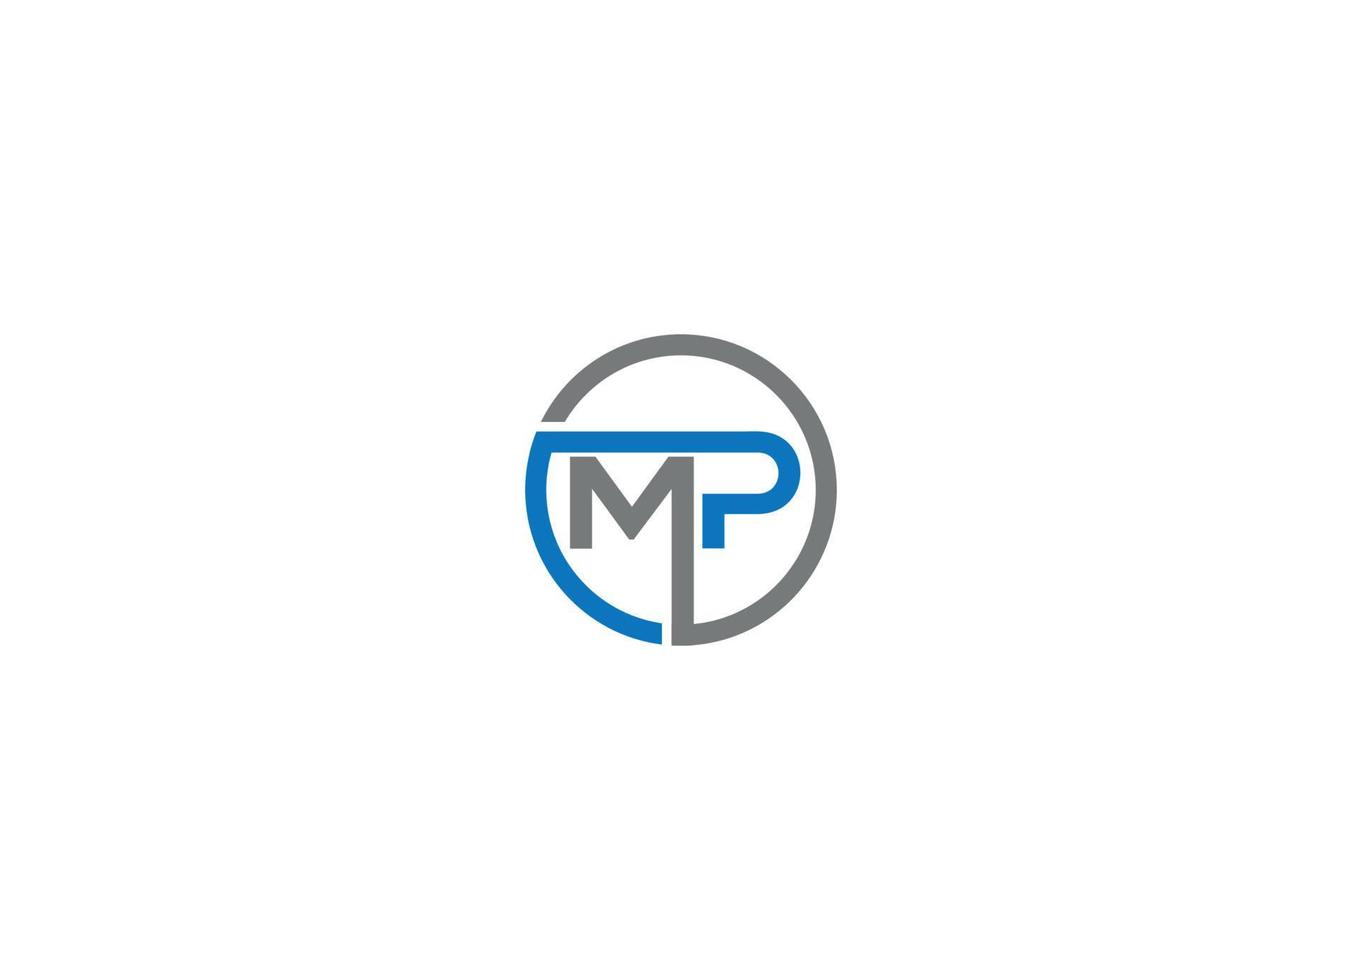 modelo de ícone de vetor de design de logotipo moderno mp com fundo branco